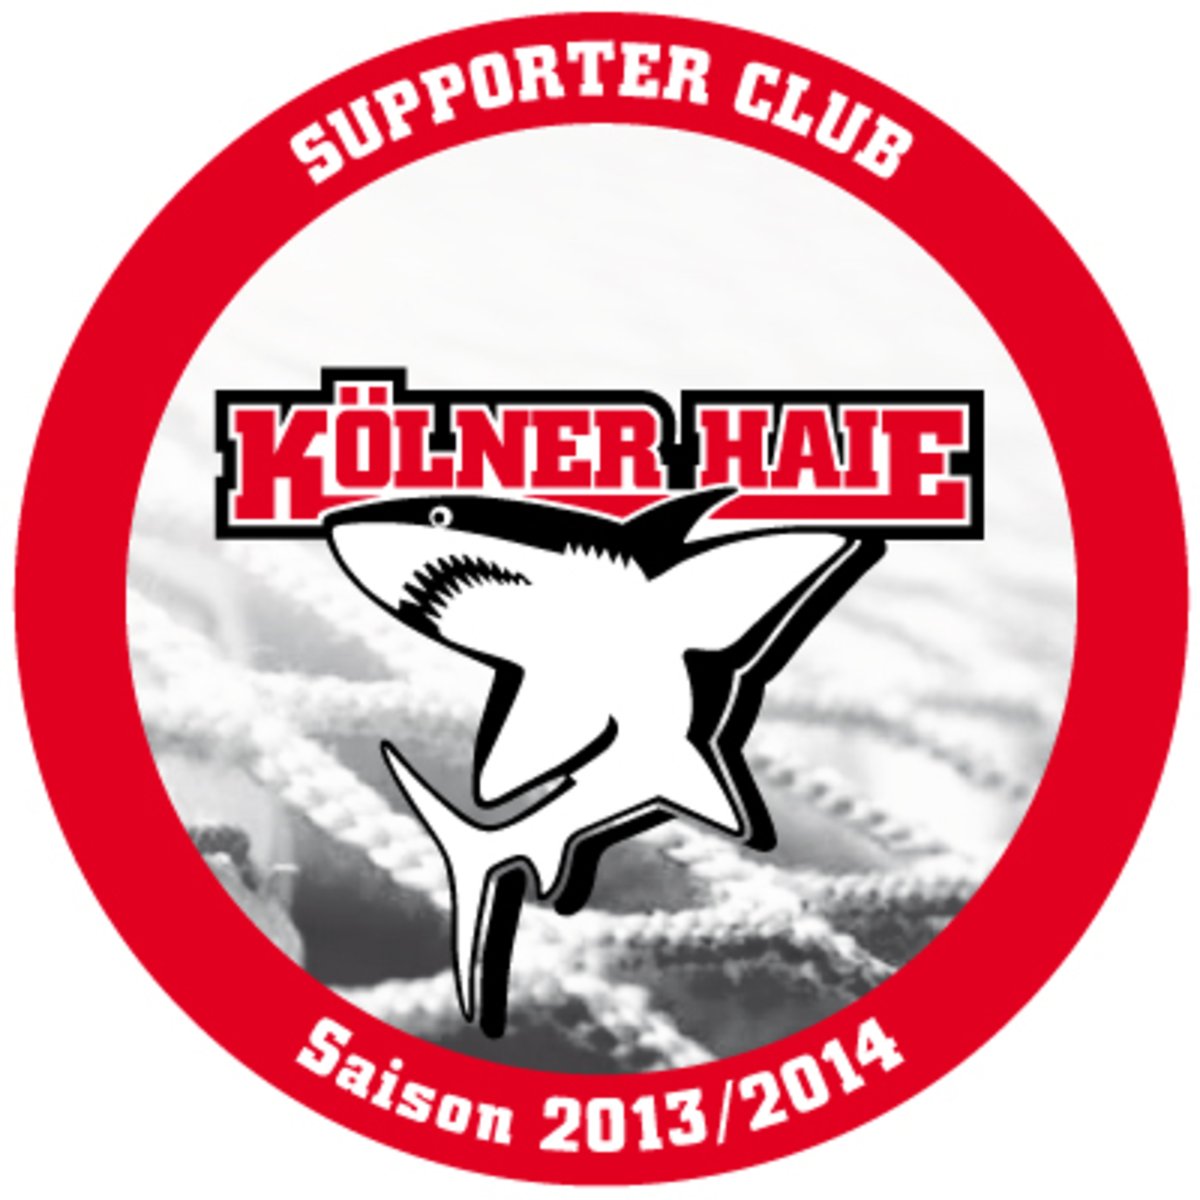 ALDAK als Supporter Club der Kölner Haie 2013/14